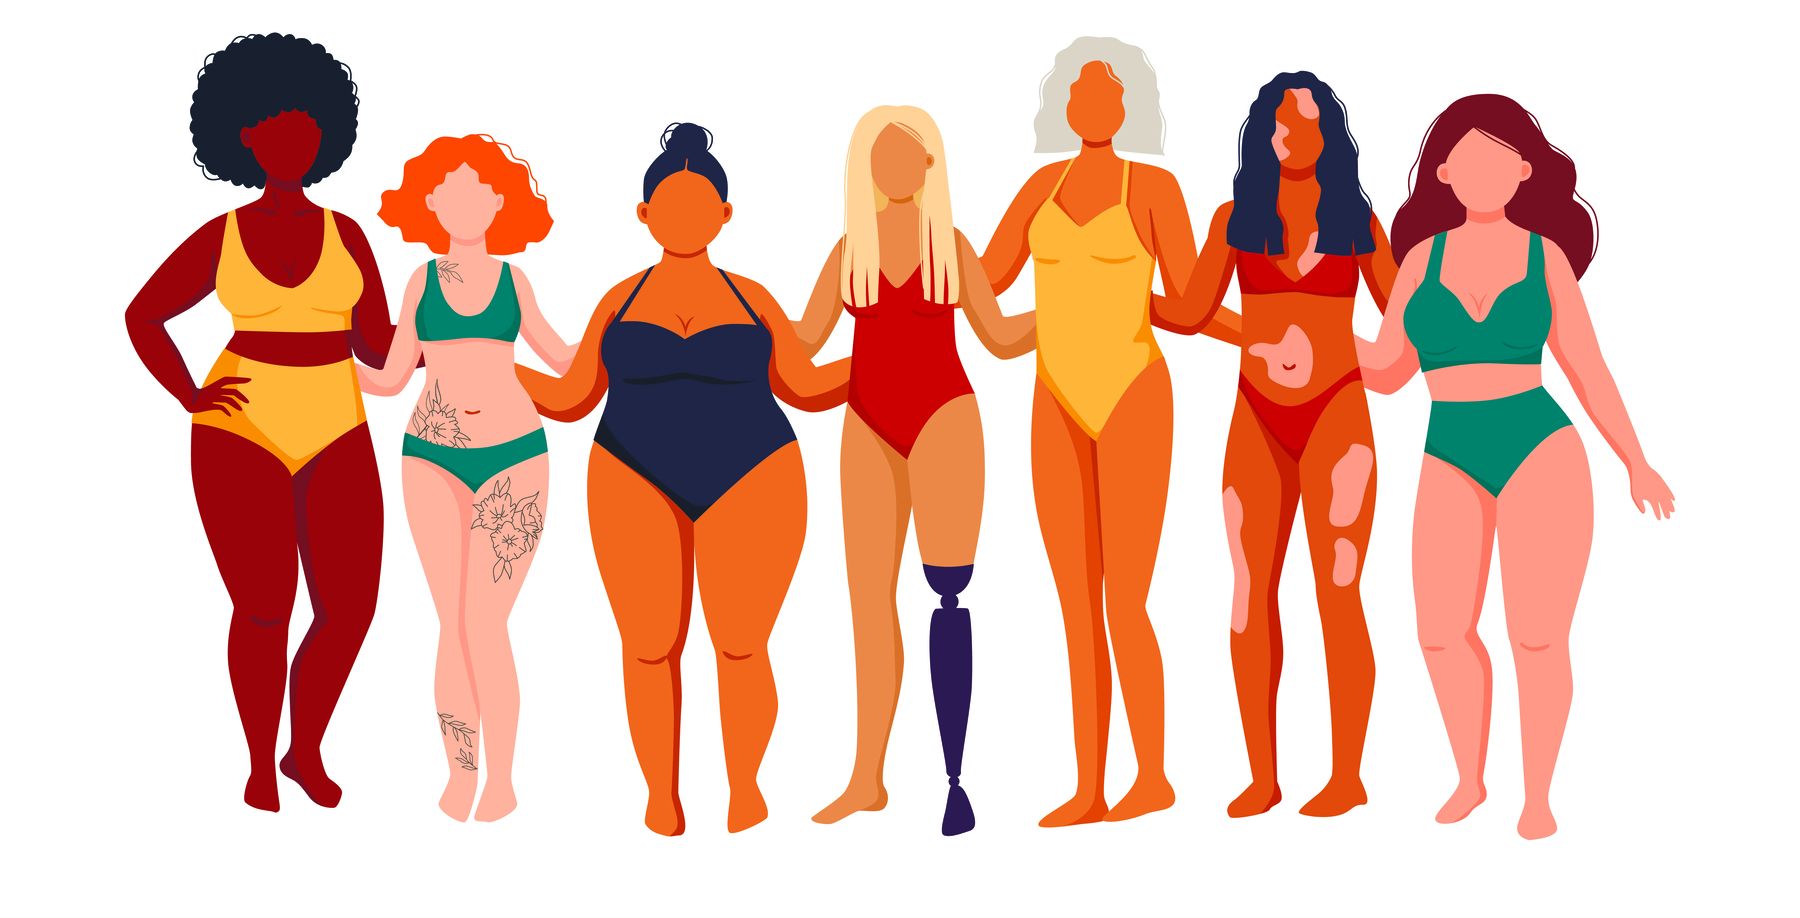 Ilustração. Diversas mulheres, de maiô ou biquíni, expondo corpos diferentes: magro ou com sobrepeso, alto ou baixo, com vitiligo, com tatuagens, com prótese em uma das pernas.